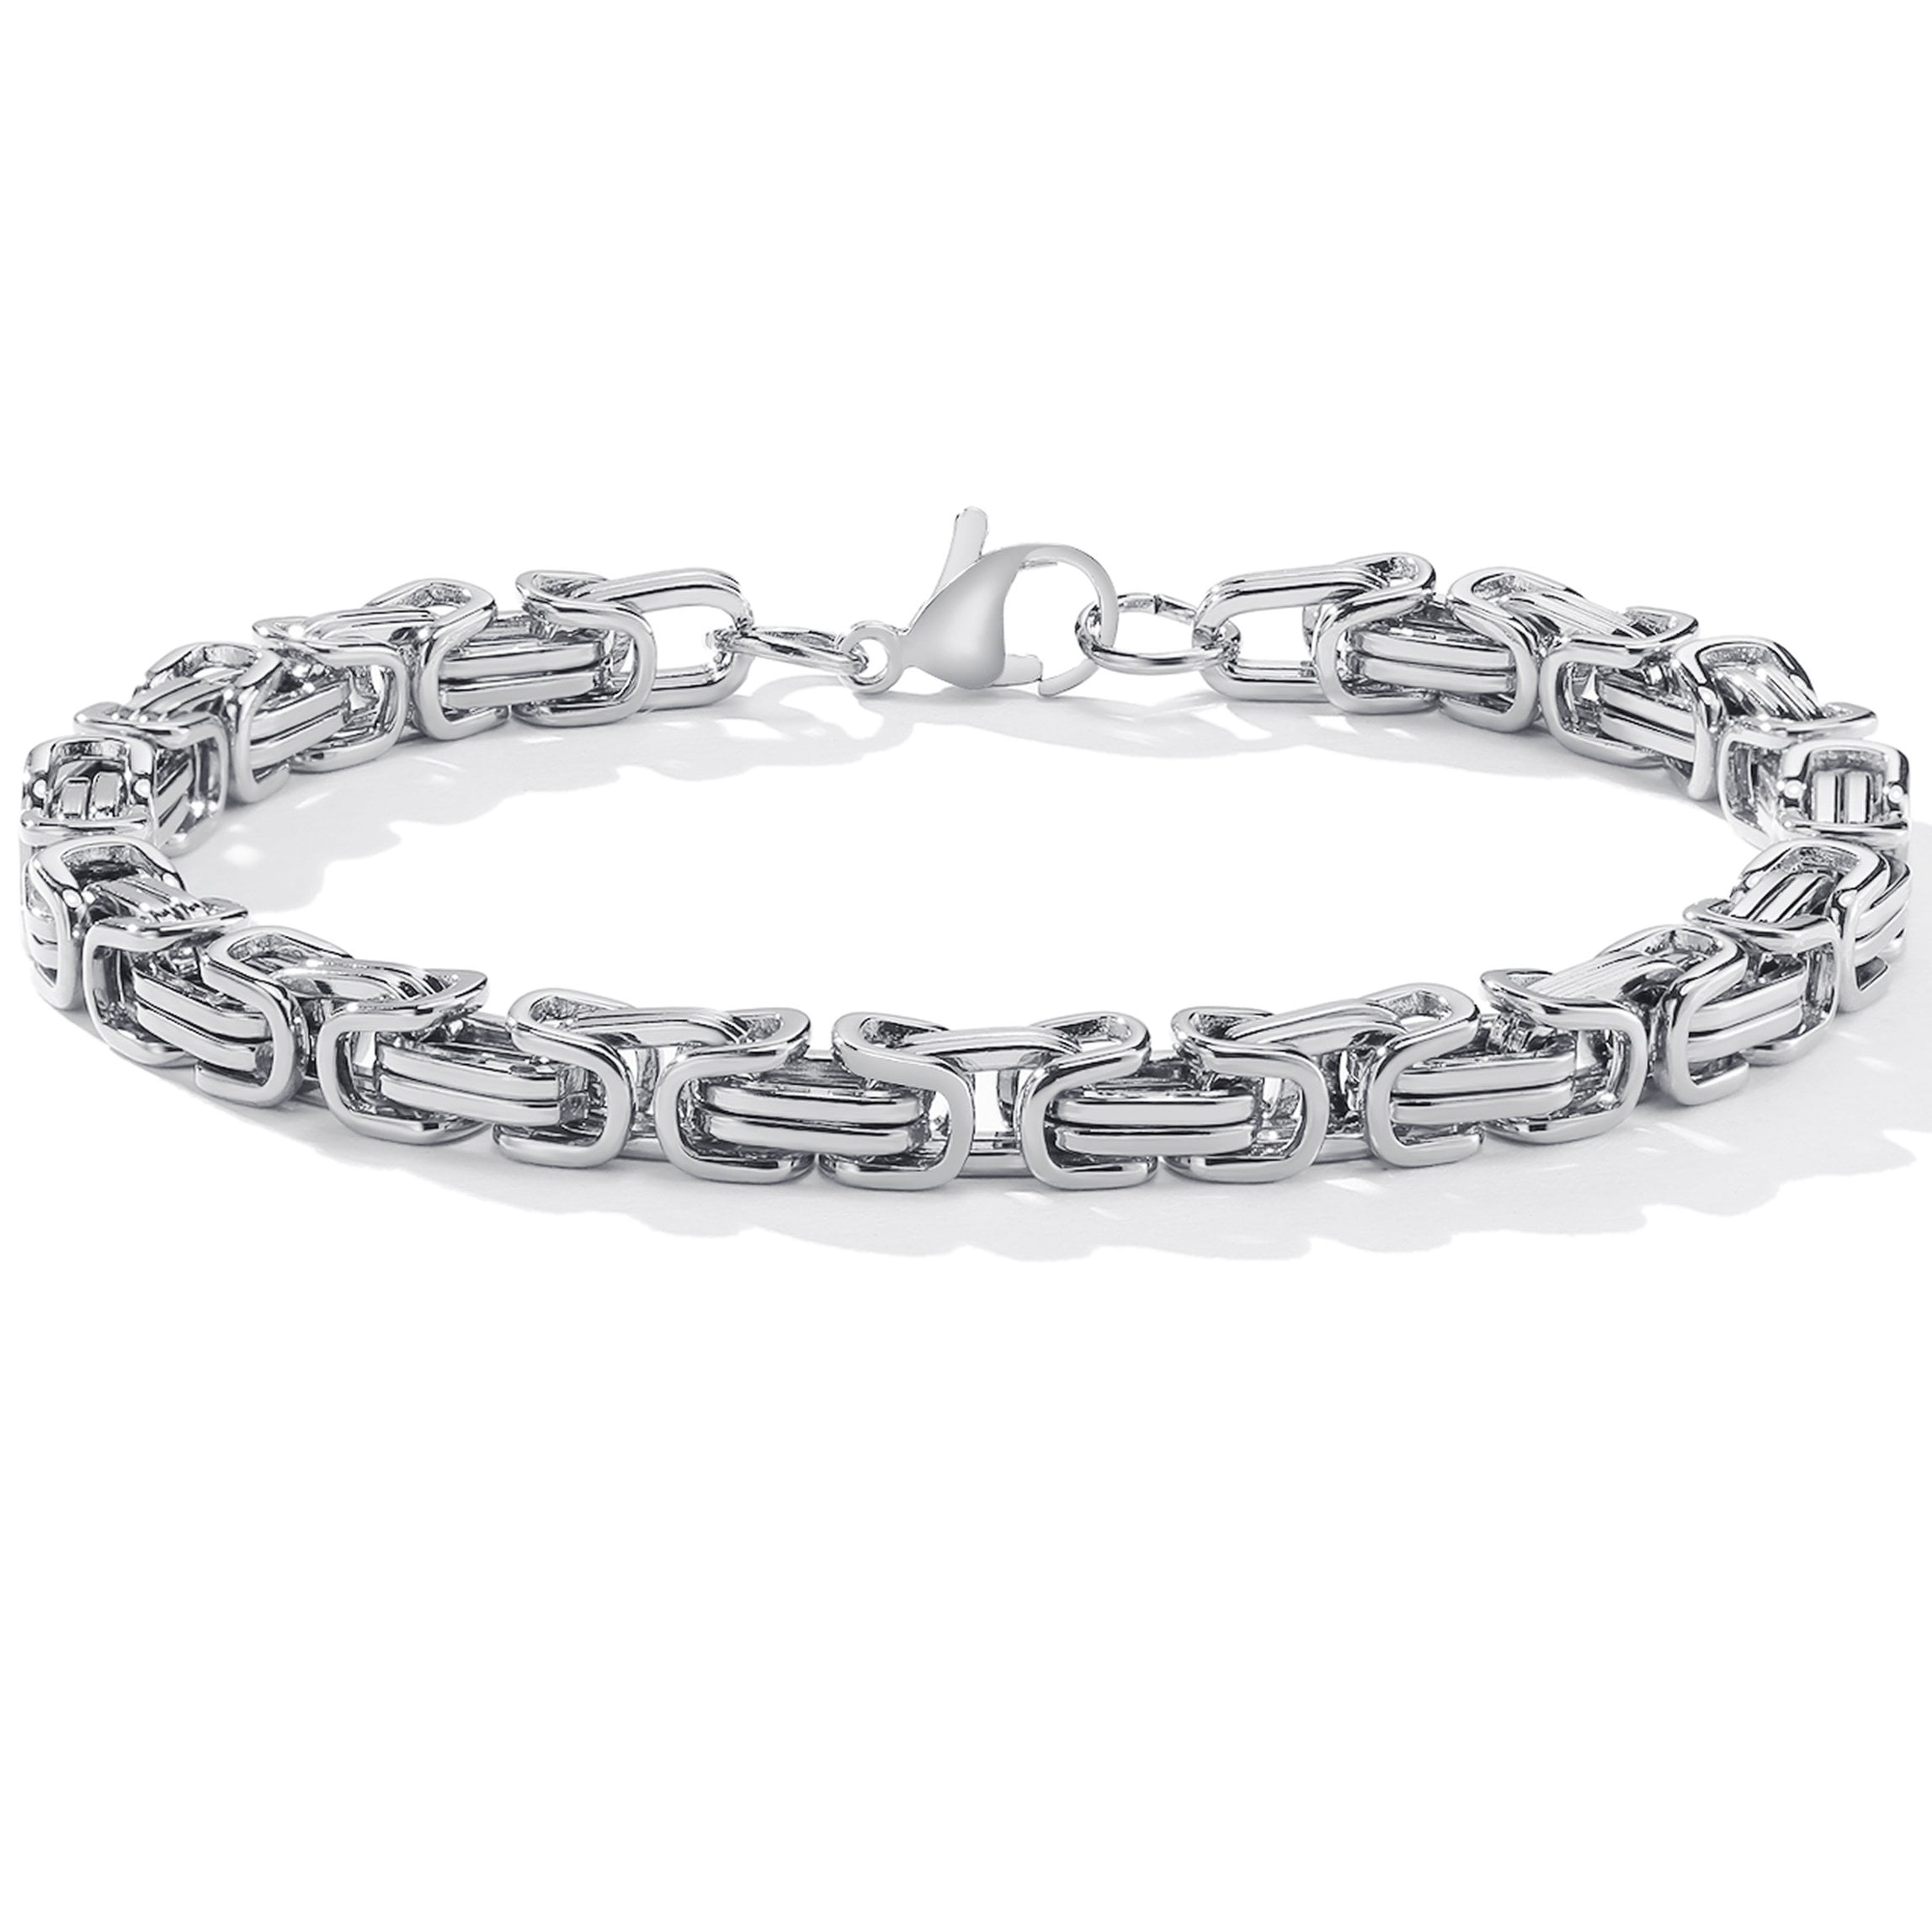 Hoisy Bracelets, Bracelets Stainless Steel Whip Chain Chain Bracelets